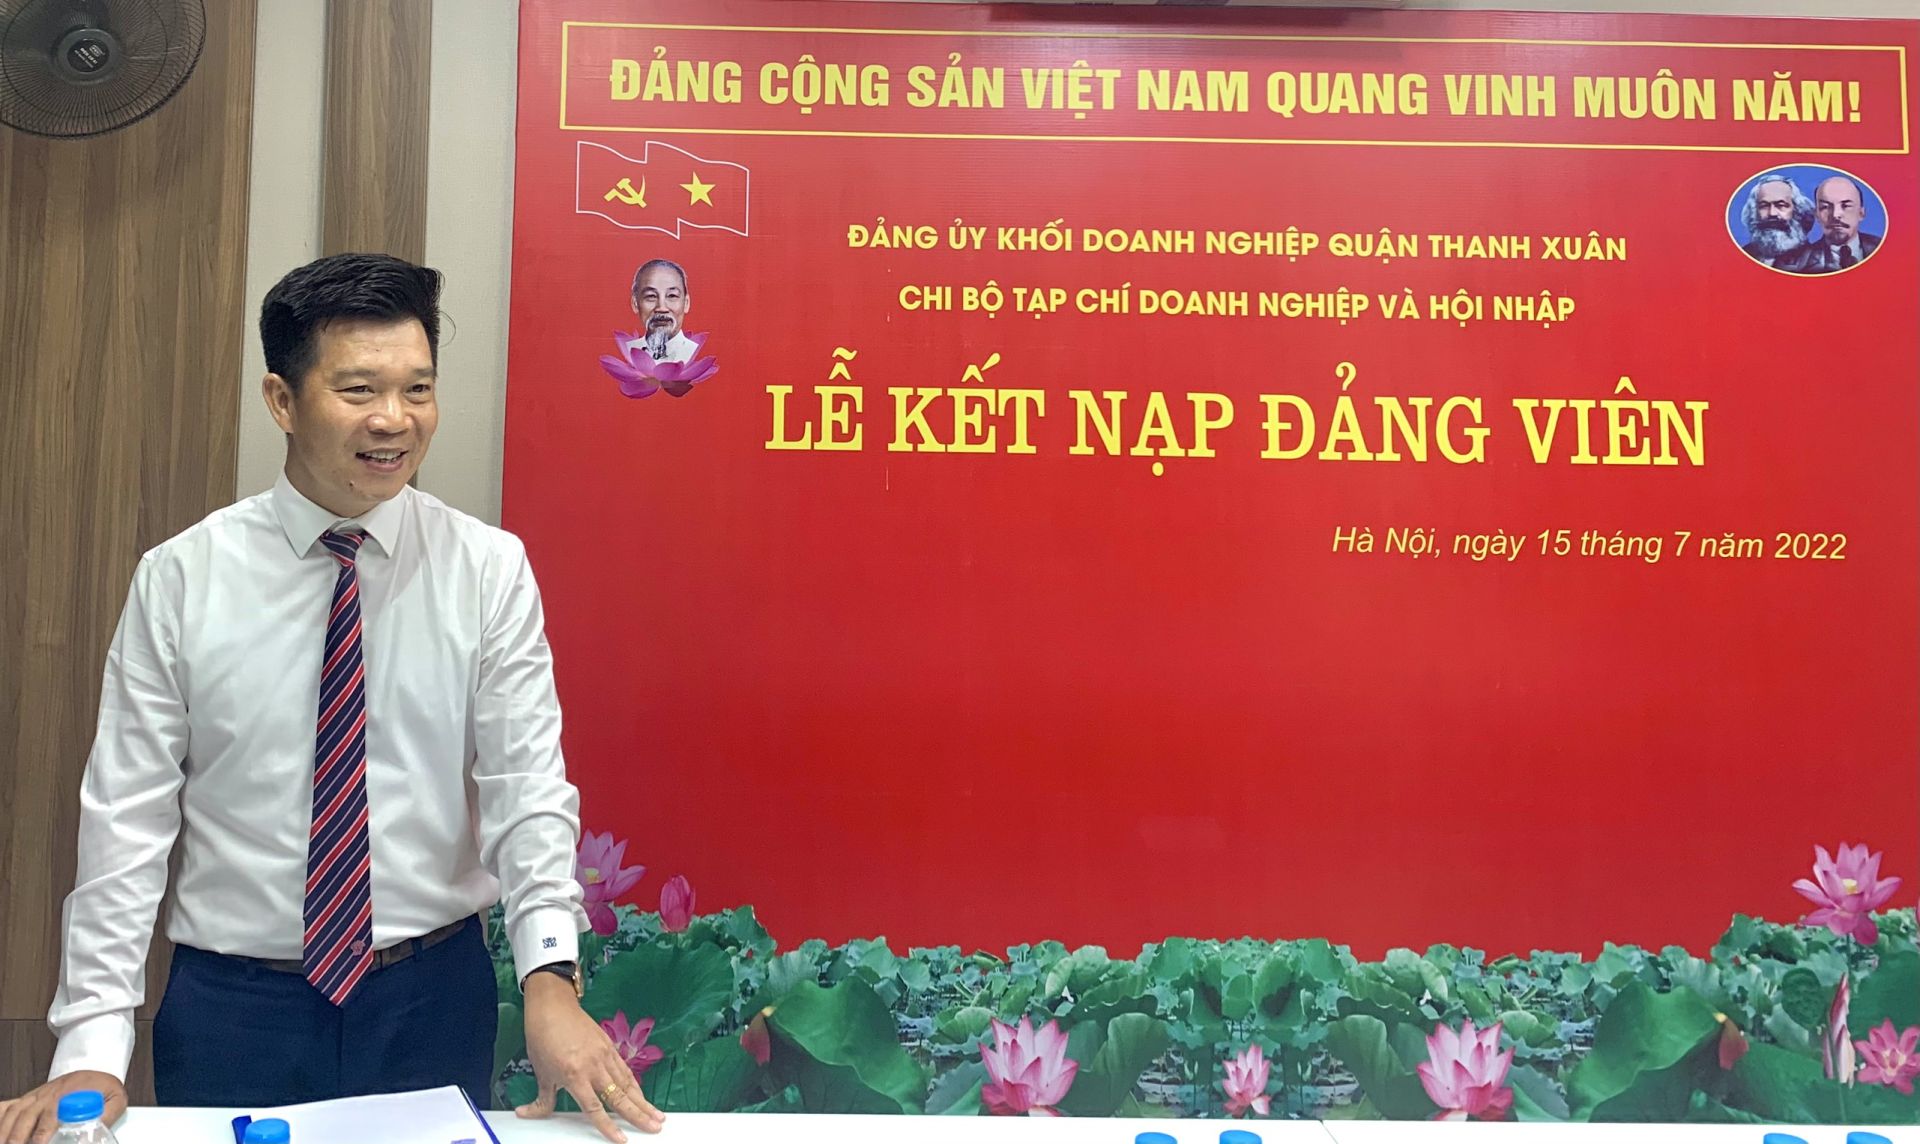 đồng chí Nguyễn Văn Minh – Quận Ủy viên, Bí thư Đảng ủy Khối doanh nghiệp quận Thanh Xuân